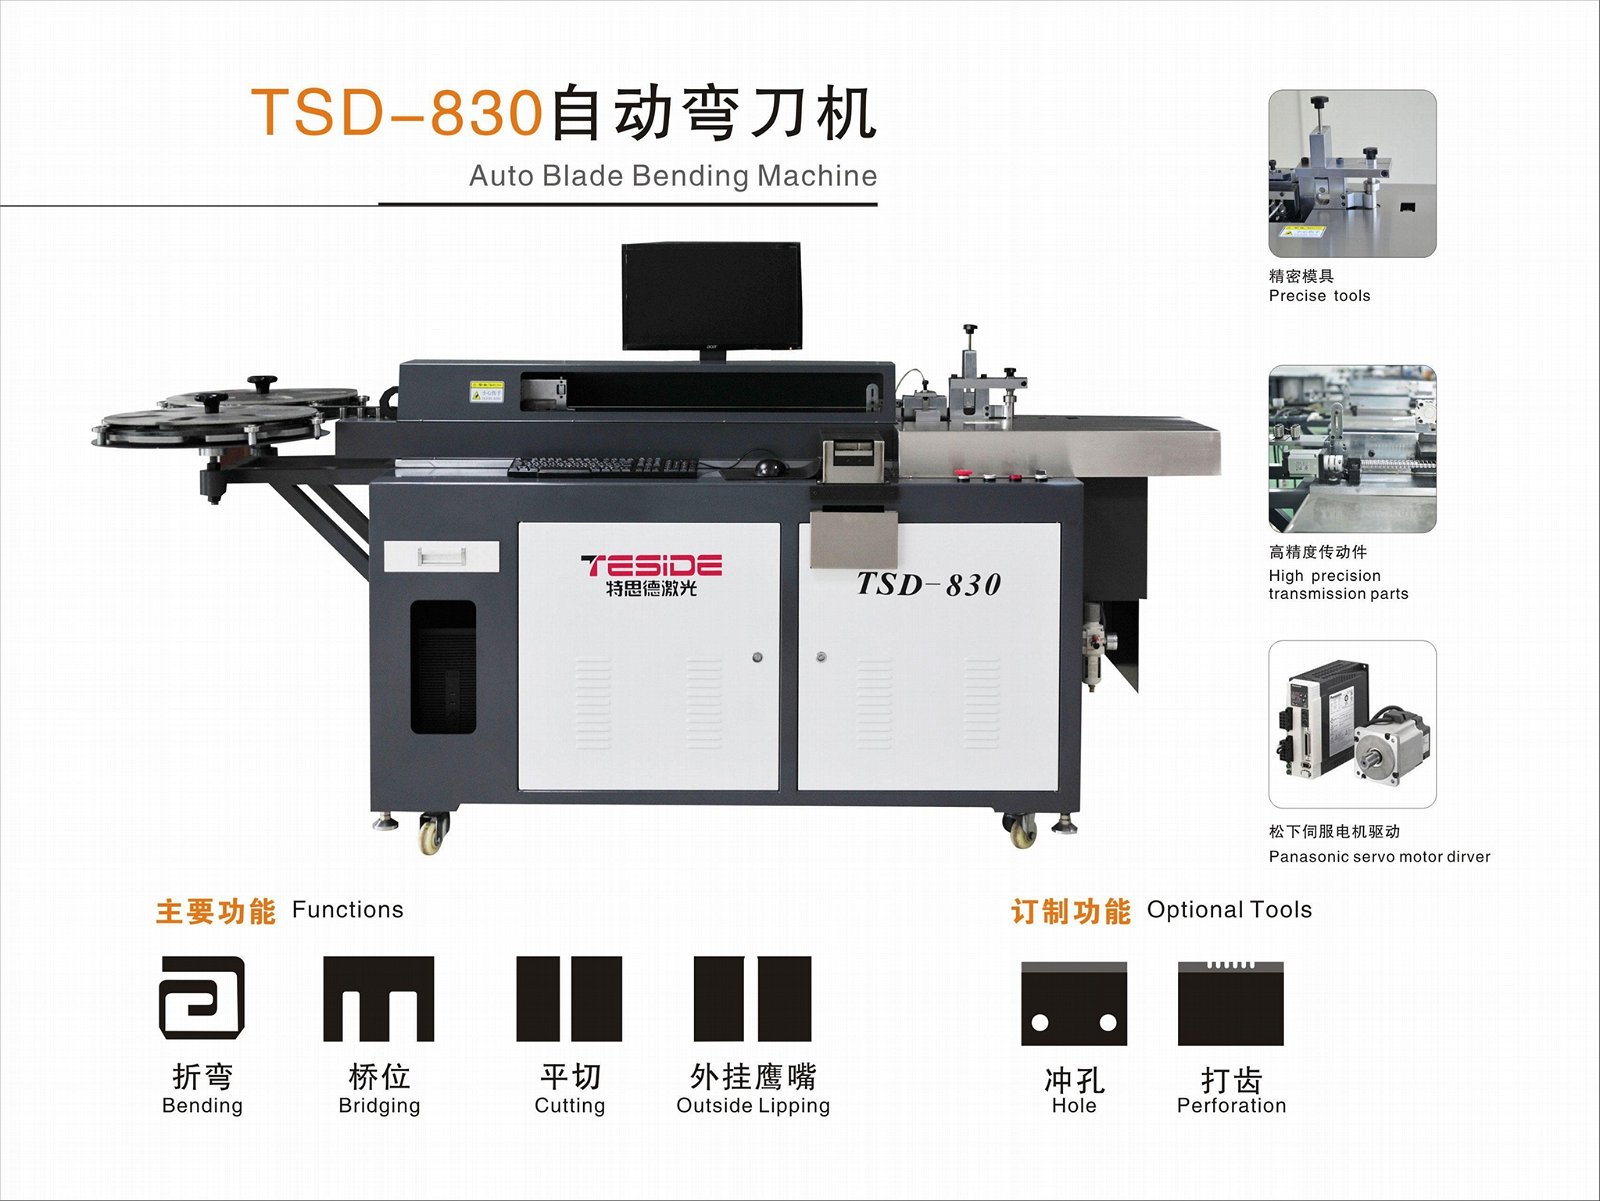 TSD-830 Auto Blade bending machine 5